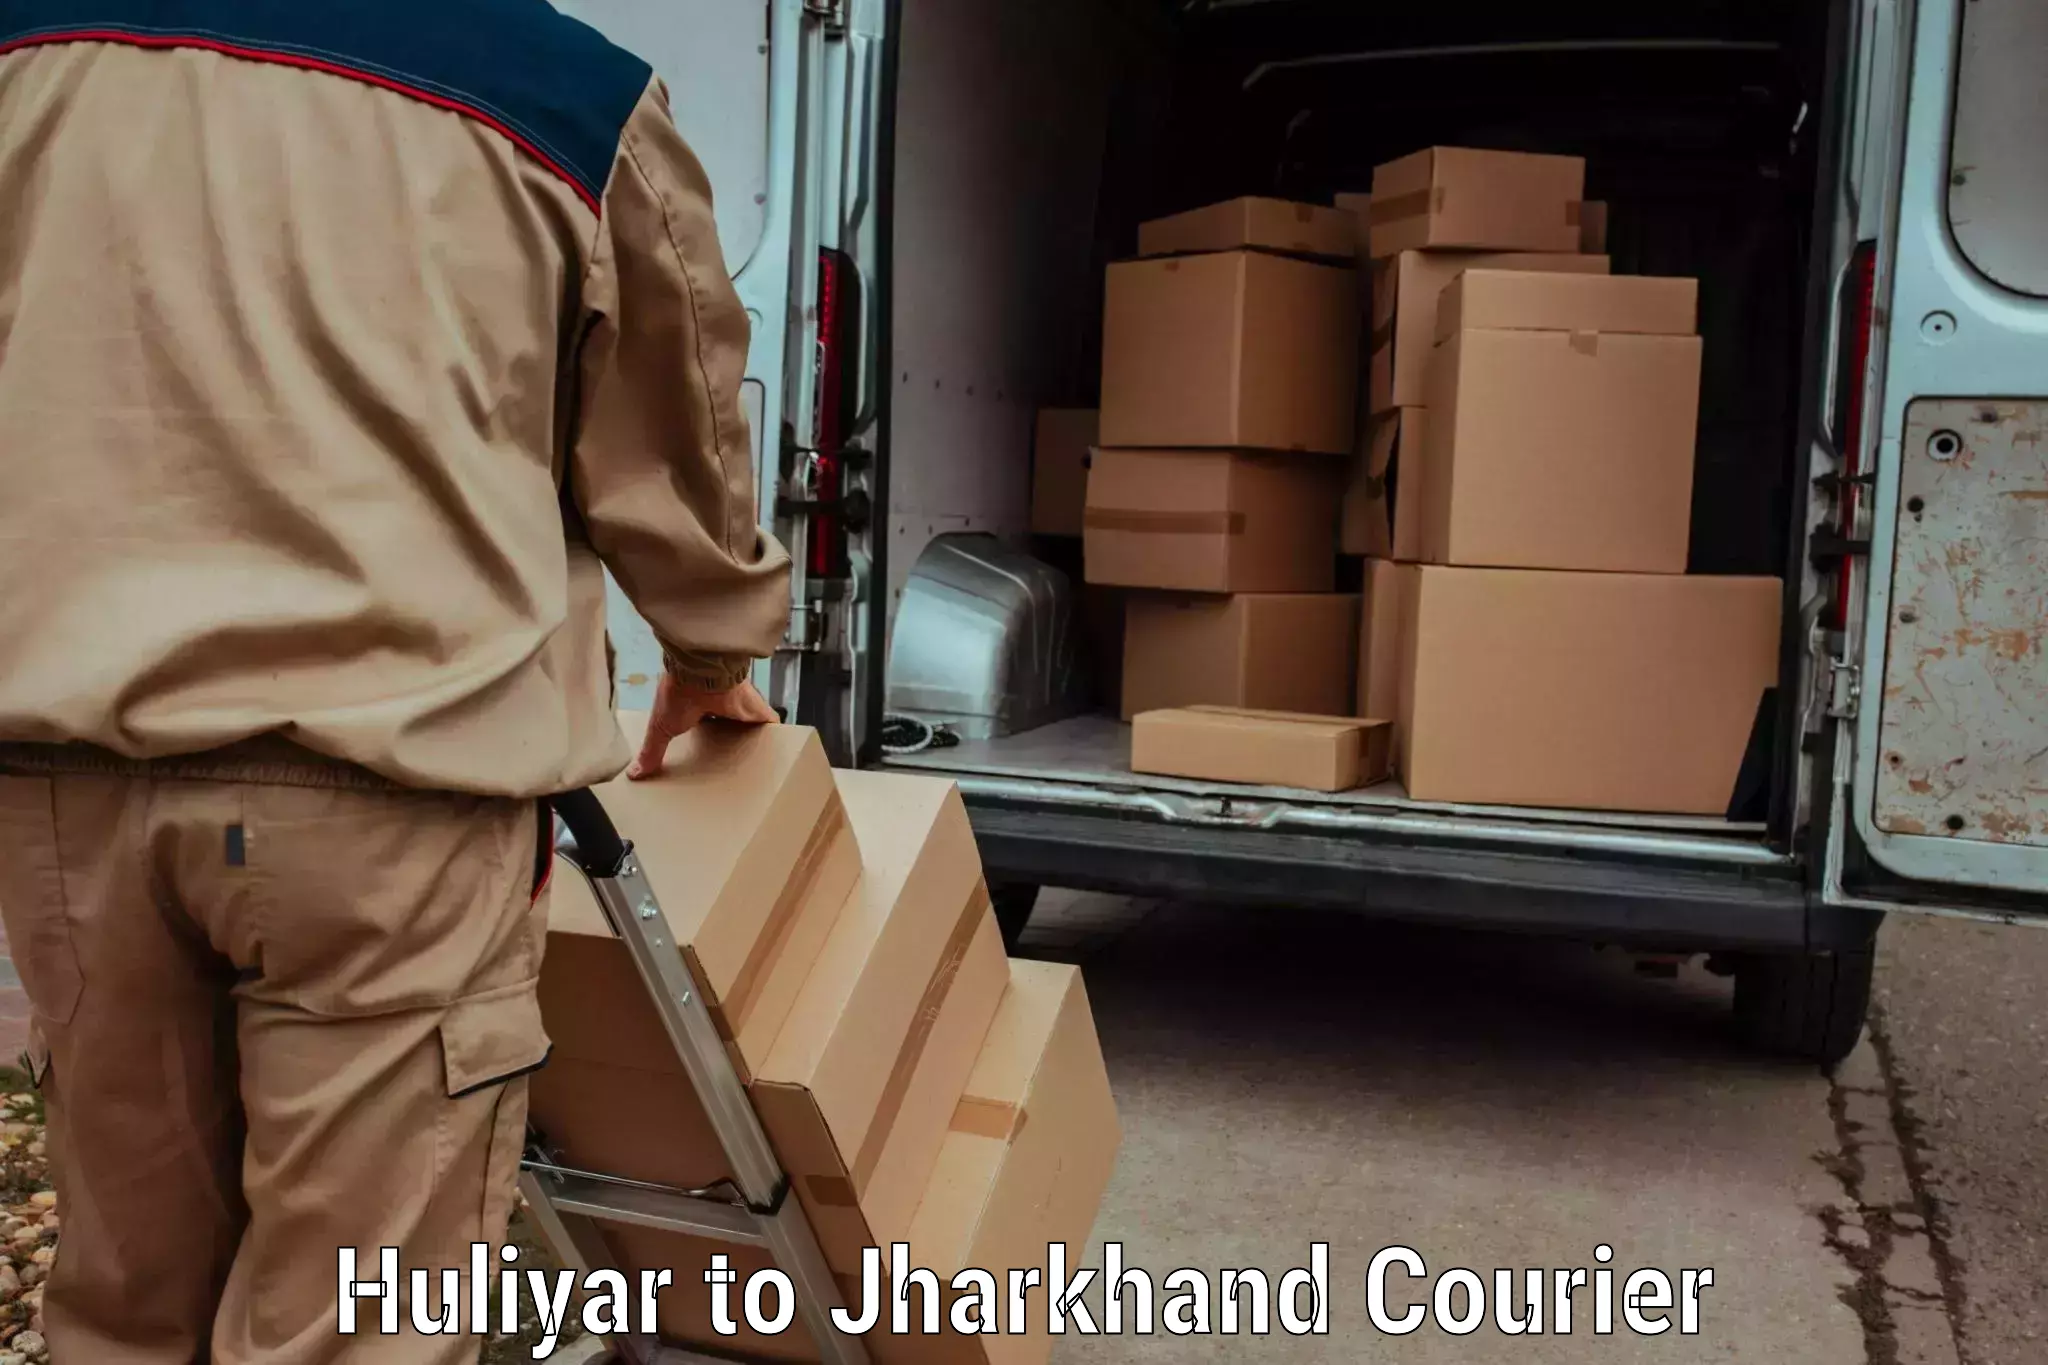 Same-day delivery solutions Huliyar to Medininagar